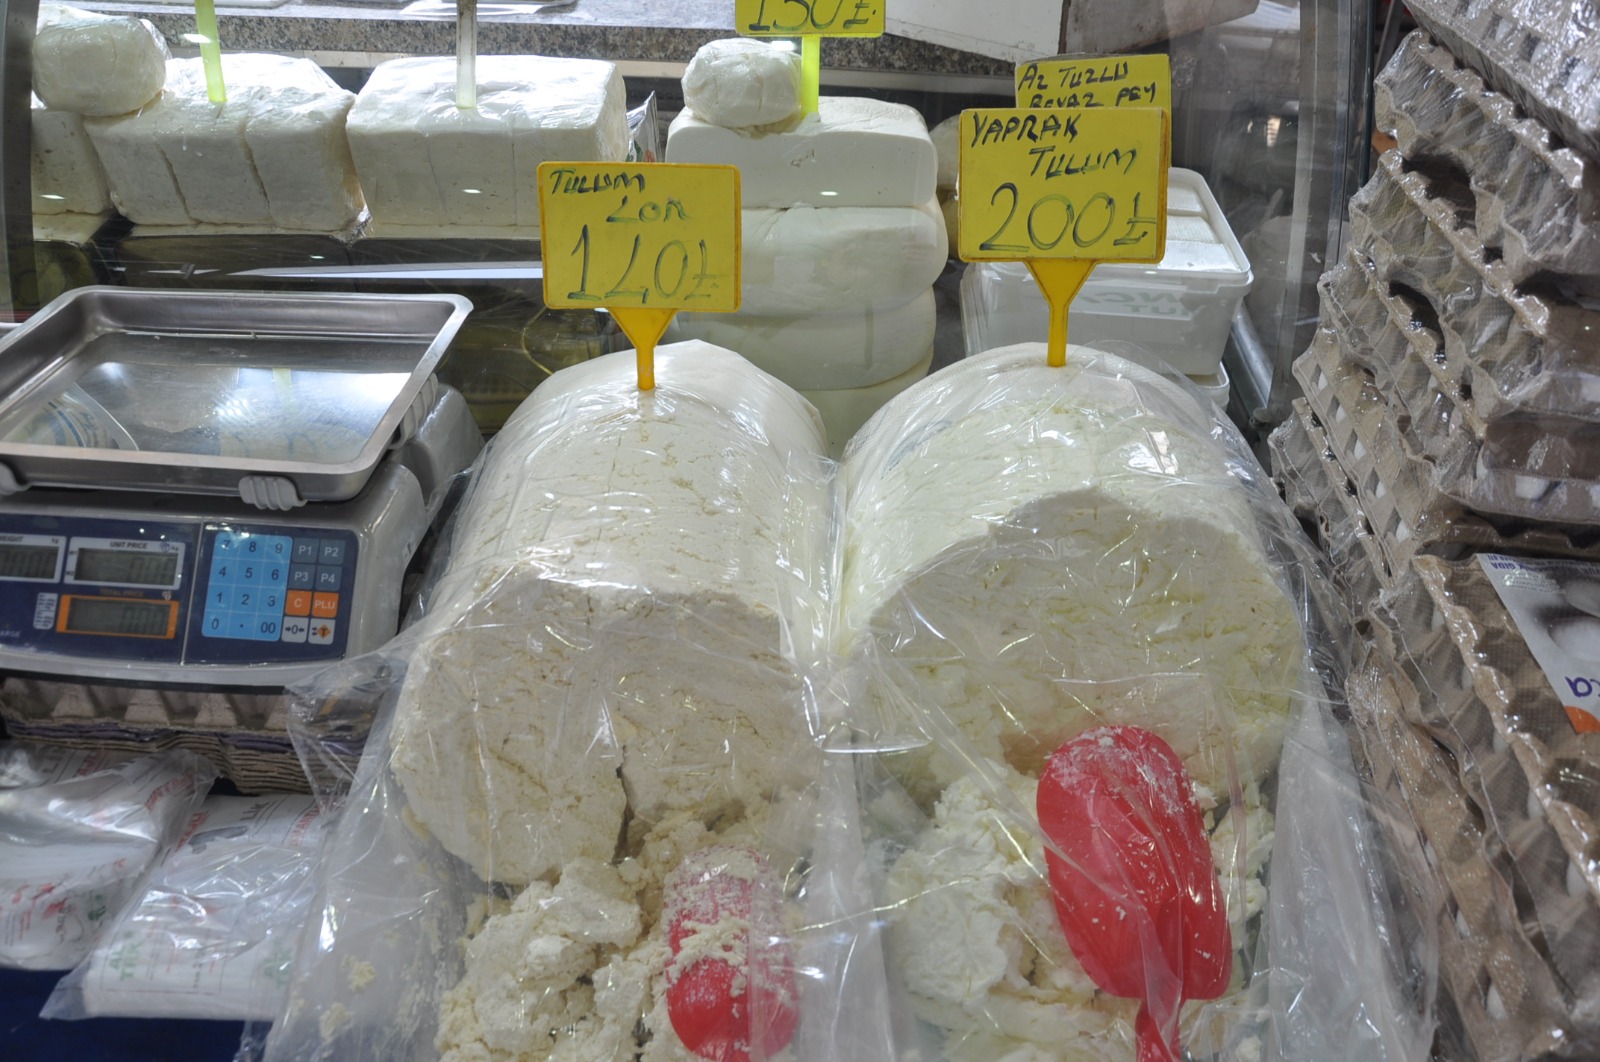 Zeytin Peynir Yumurta Fiyatlari 20 Mart Carsamba Pazari02 2